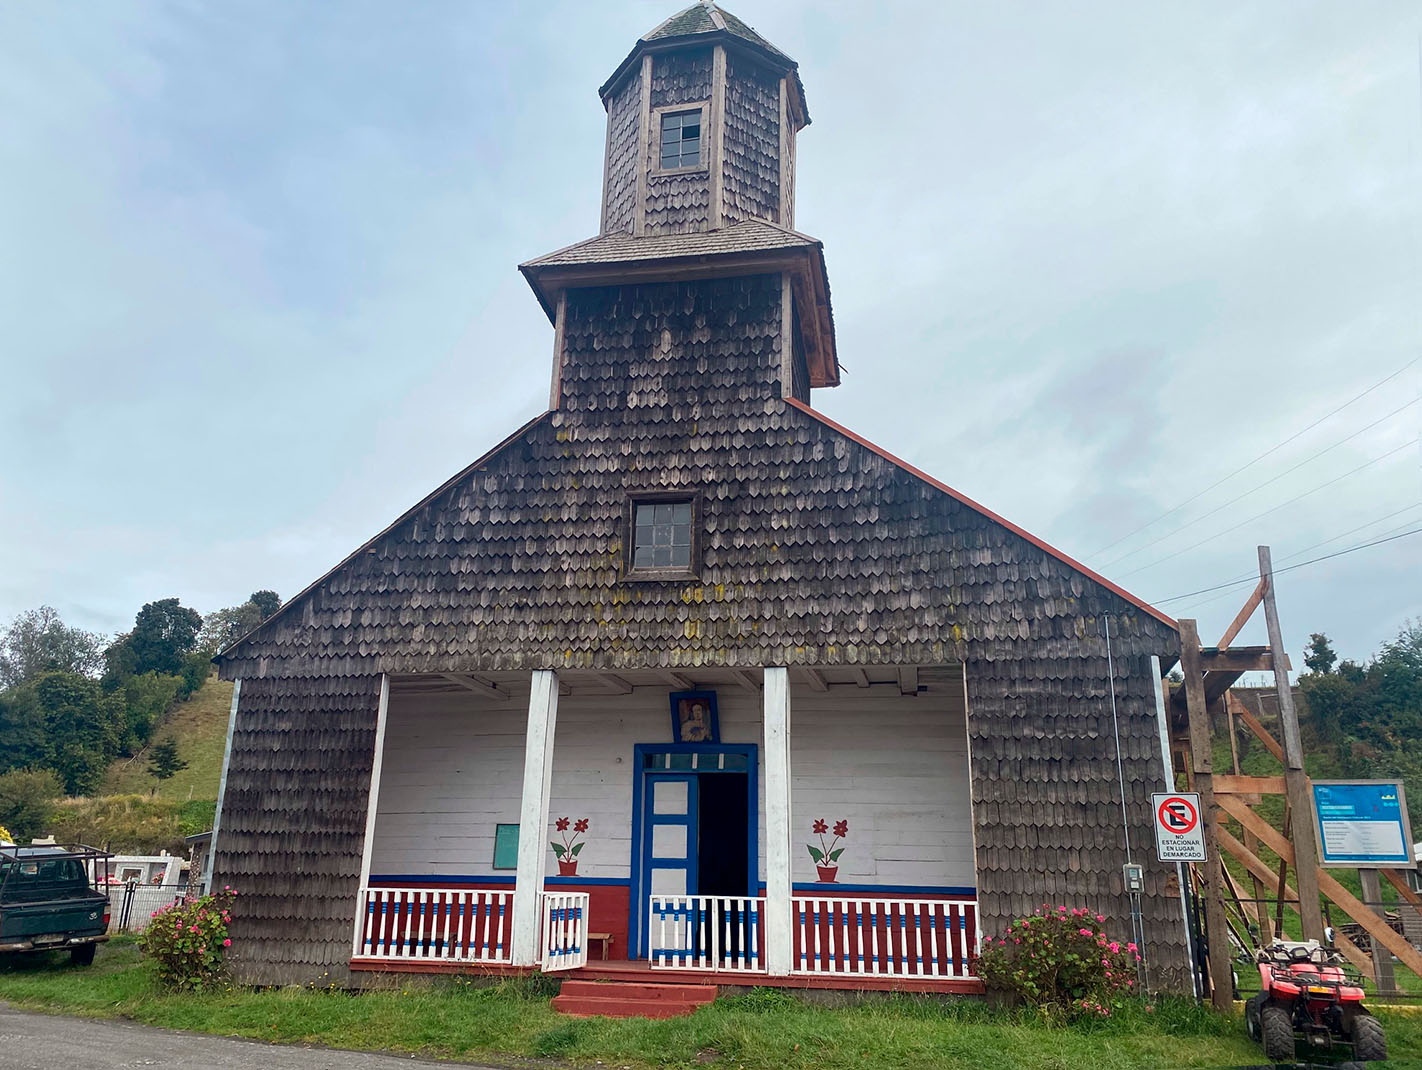 Restauración Techumbre Iglesia de Calen. Fundación de las Iglesias Patrimoniales de Chiloé, Regional Los Lagos. Proyecto en ejecución adjudicado en la convocatoria 2021.